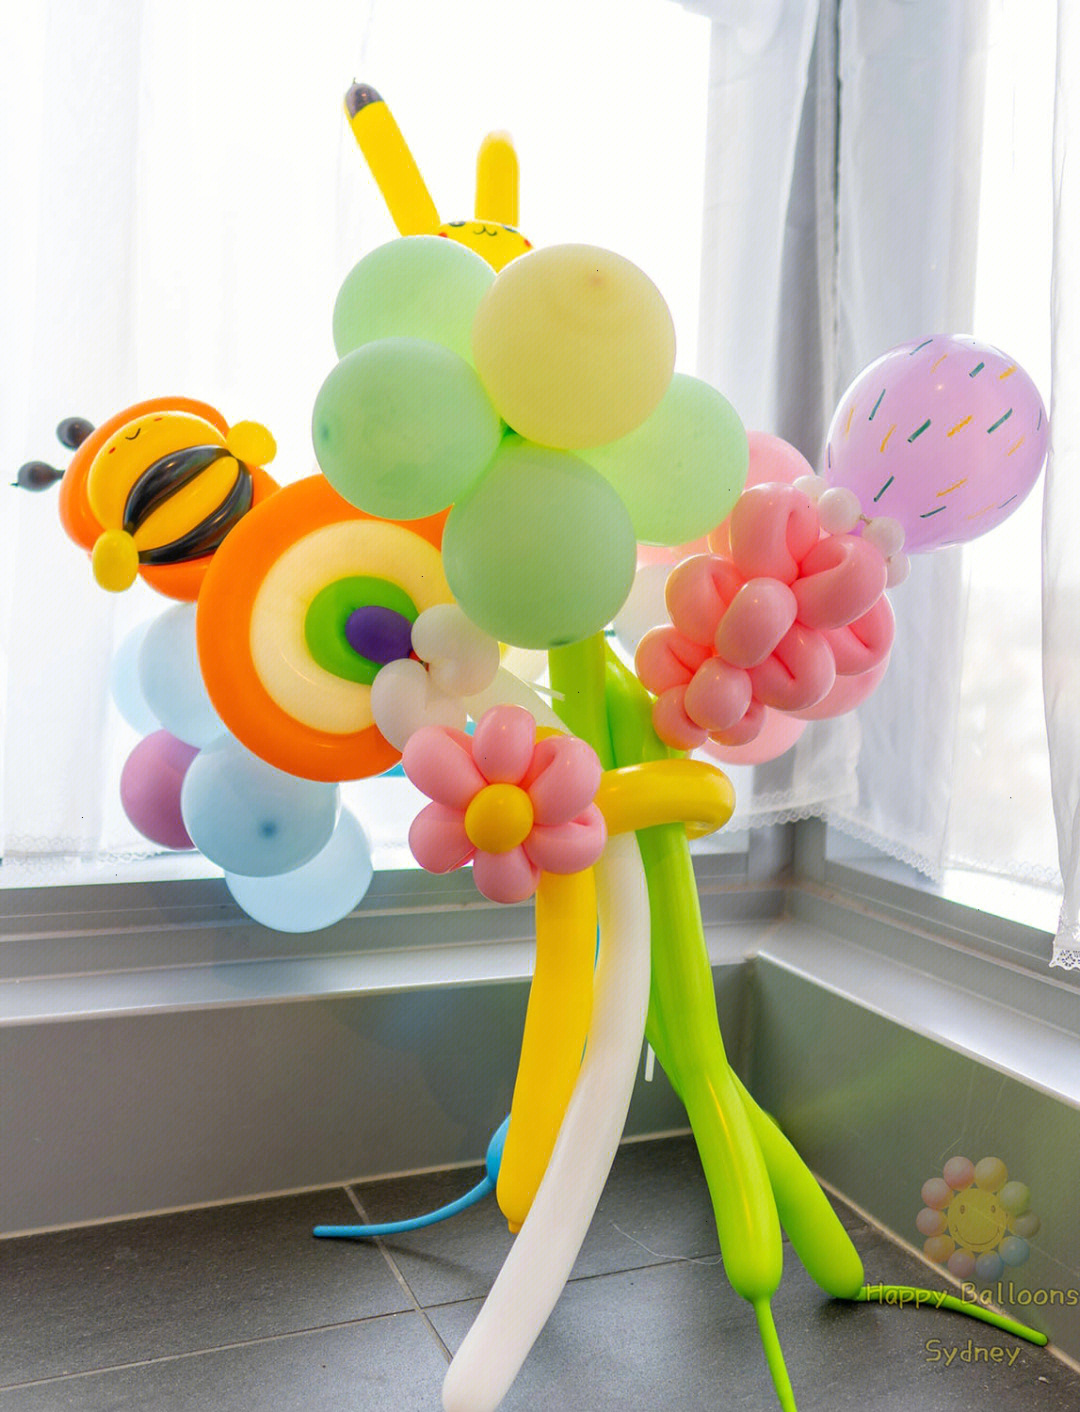 细气球编织方法图片